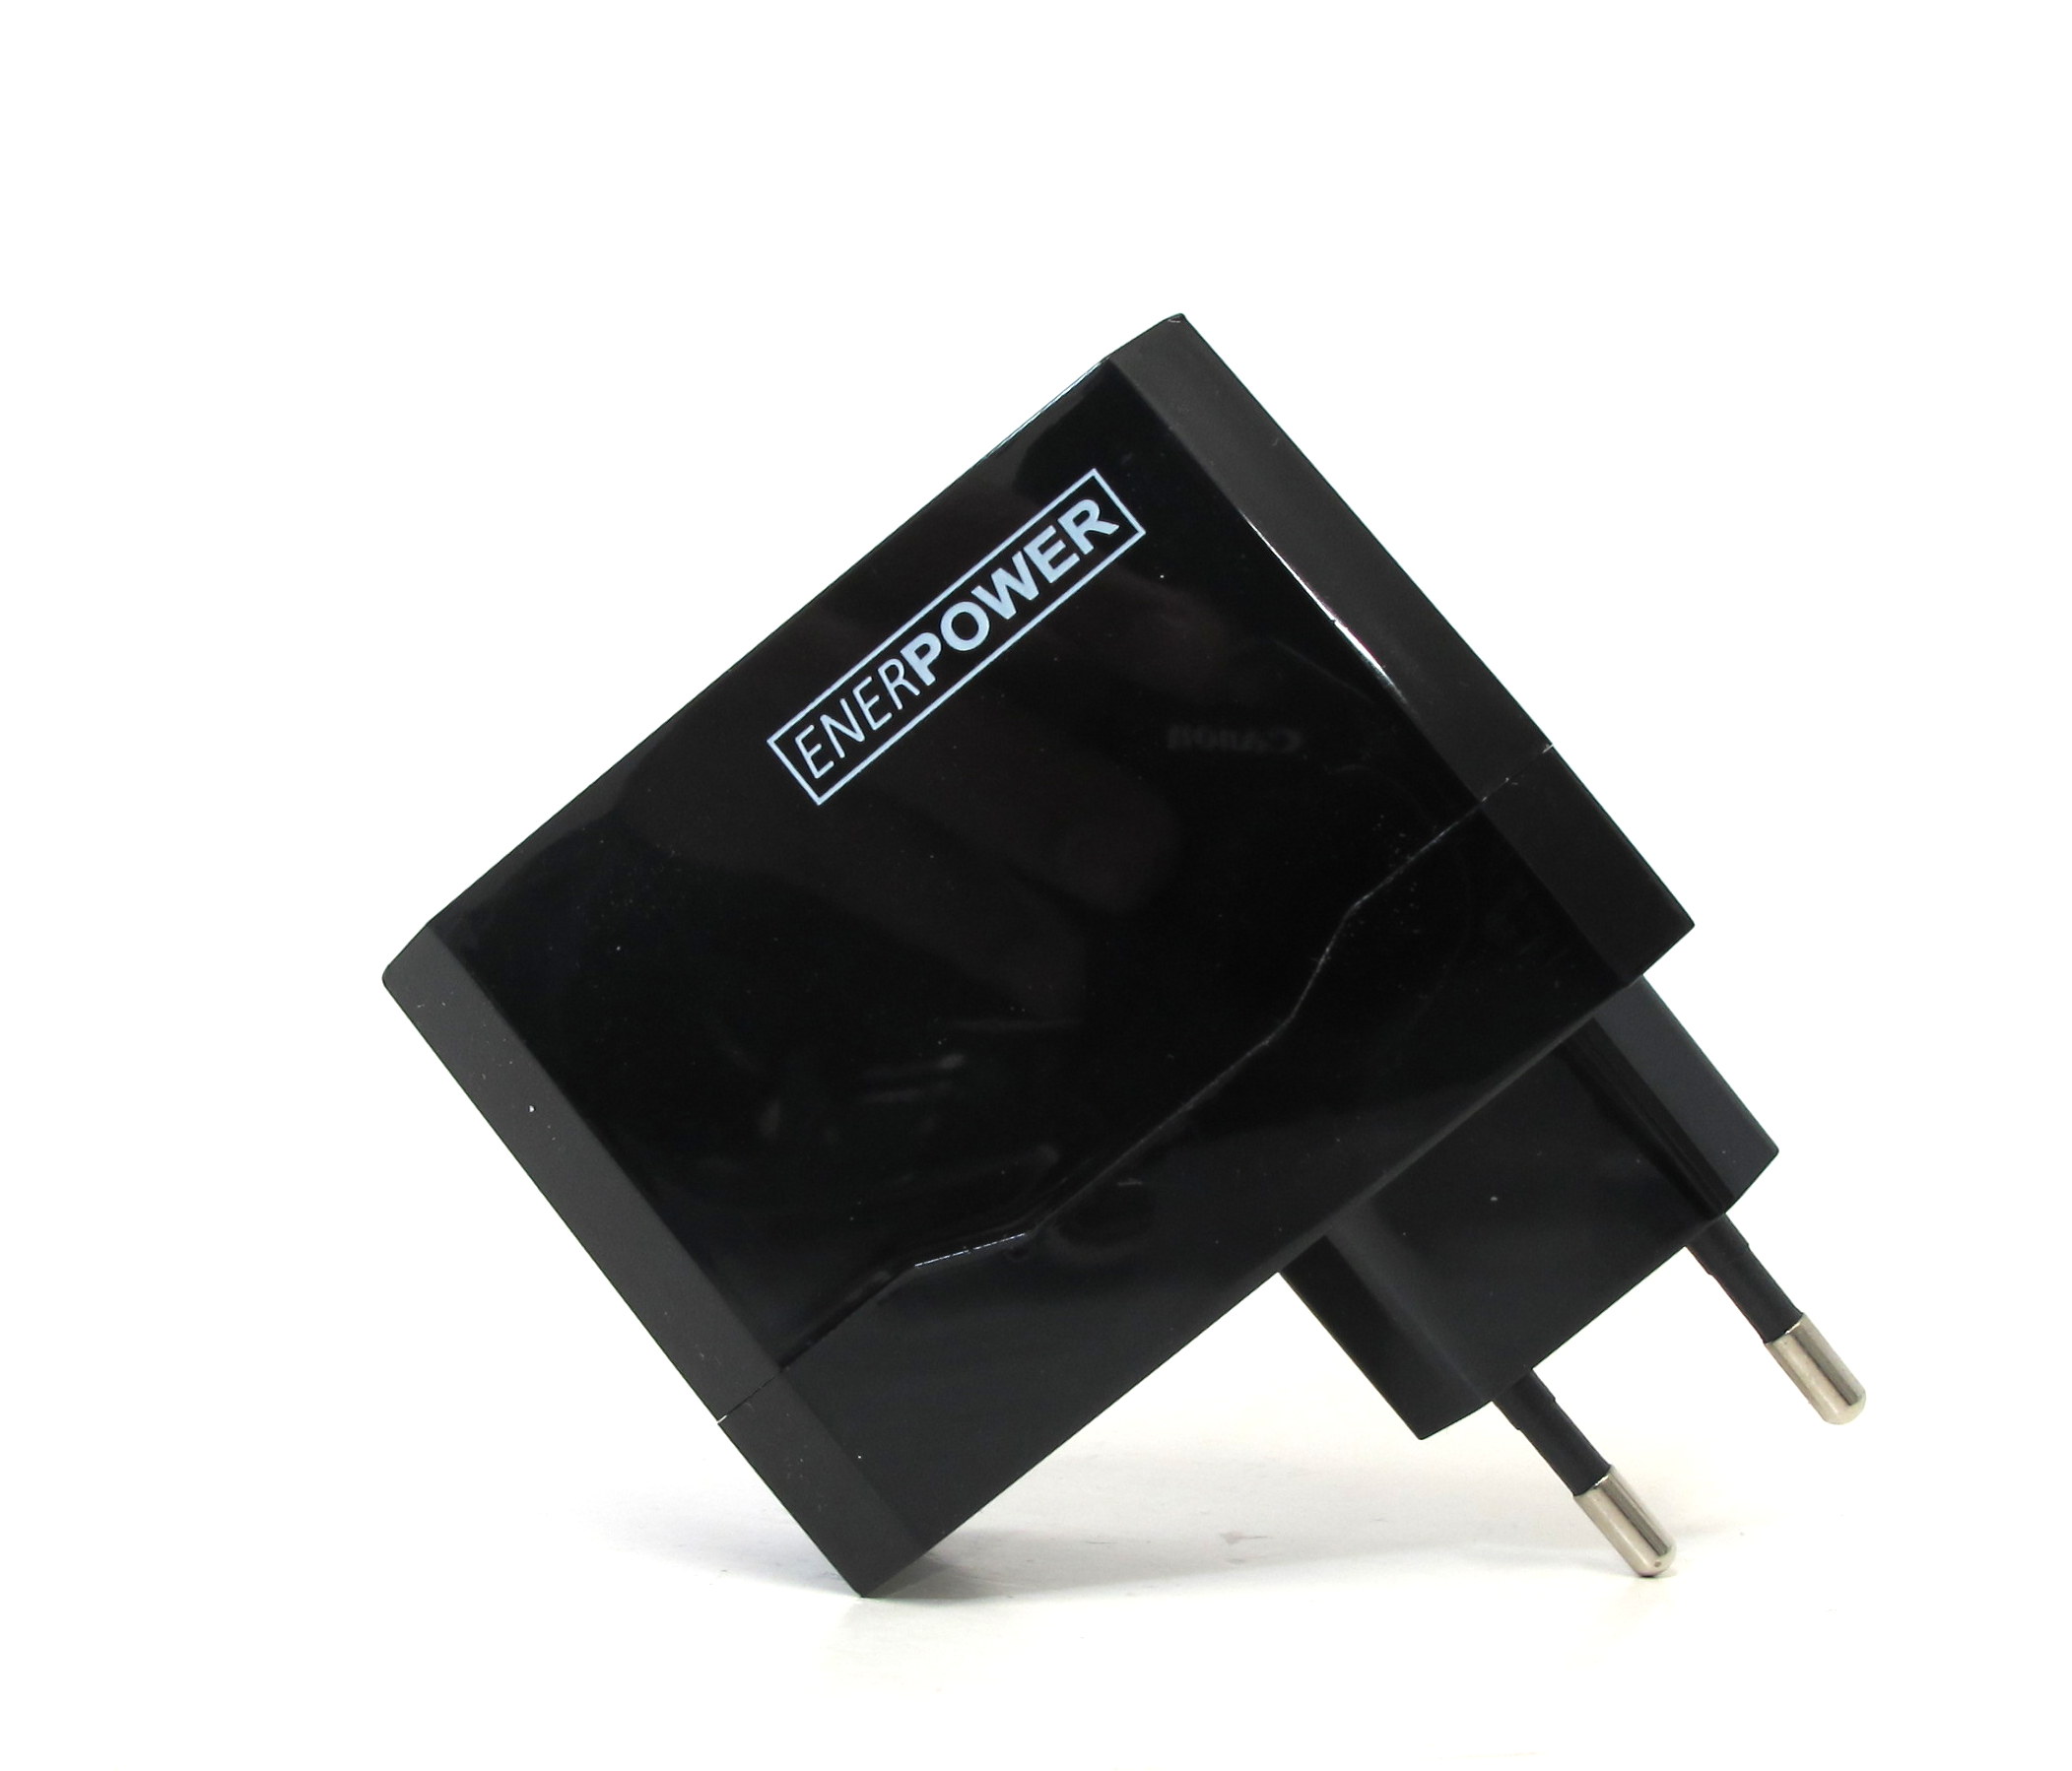 Enerpower EP-L12 USB Netzteil Wand Netz Ladegerät 5V 2A / 1A